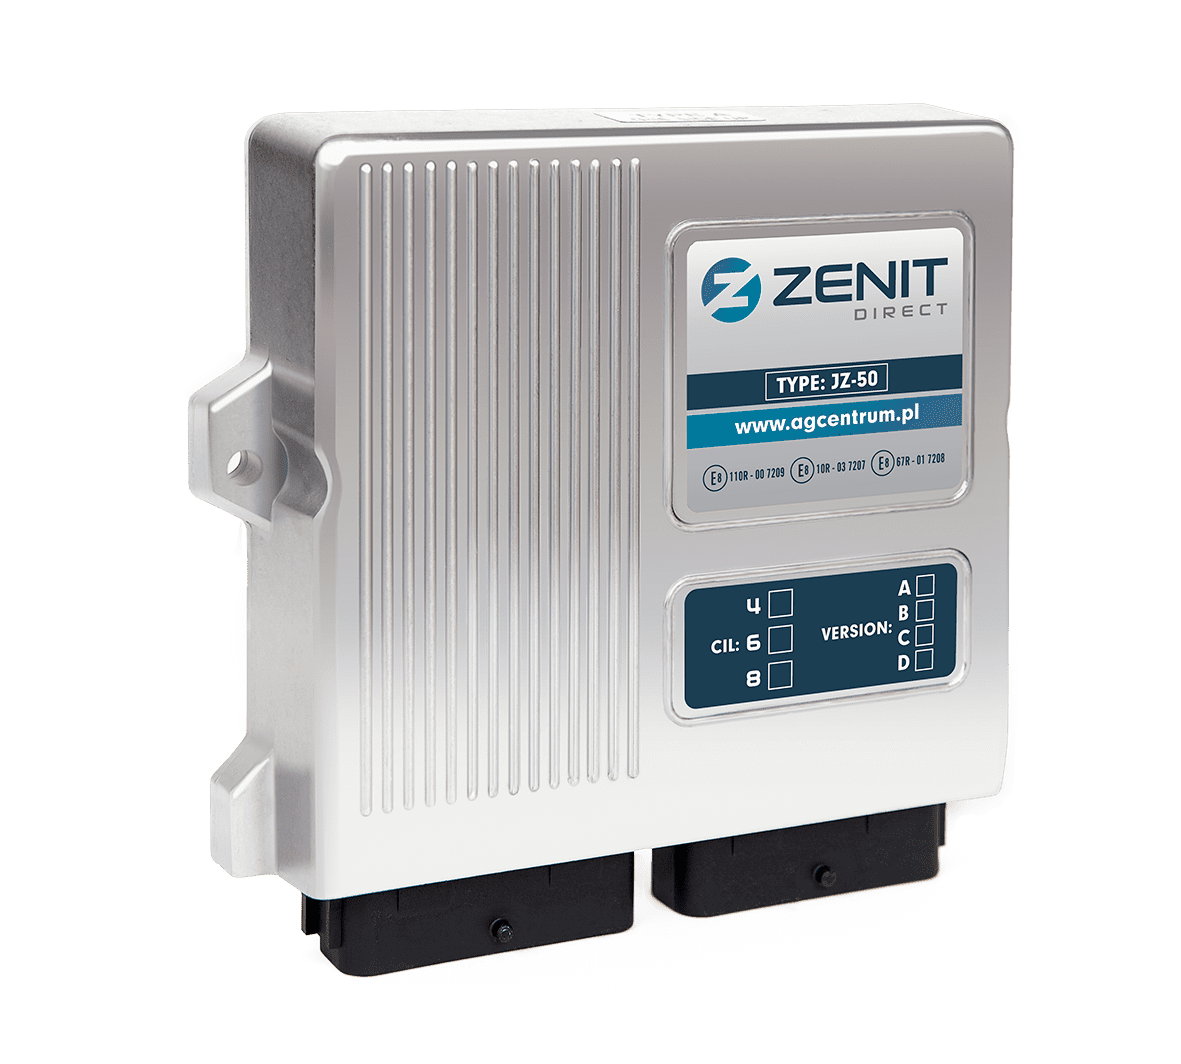 Zenit Direct - Dołącz do nas